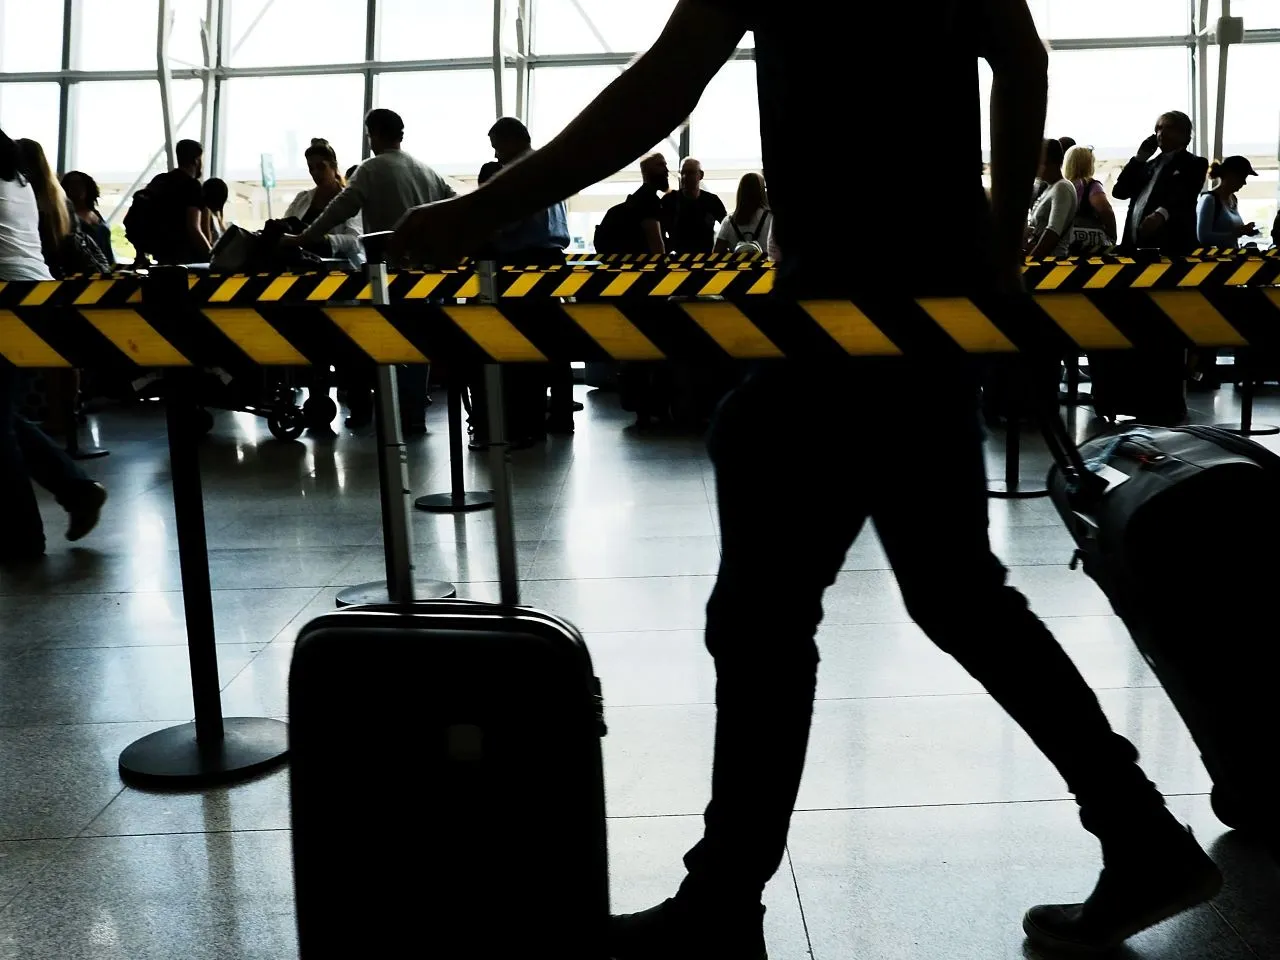 ¿Puede una persona deportada viajar a otro país? Examinando las reglas y restricciones